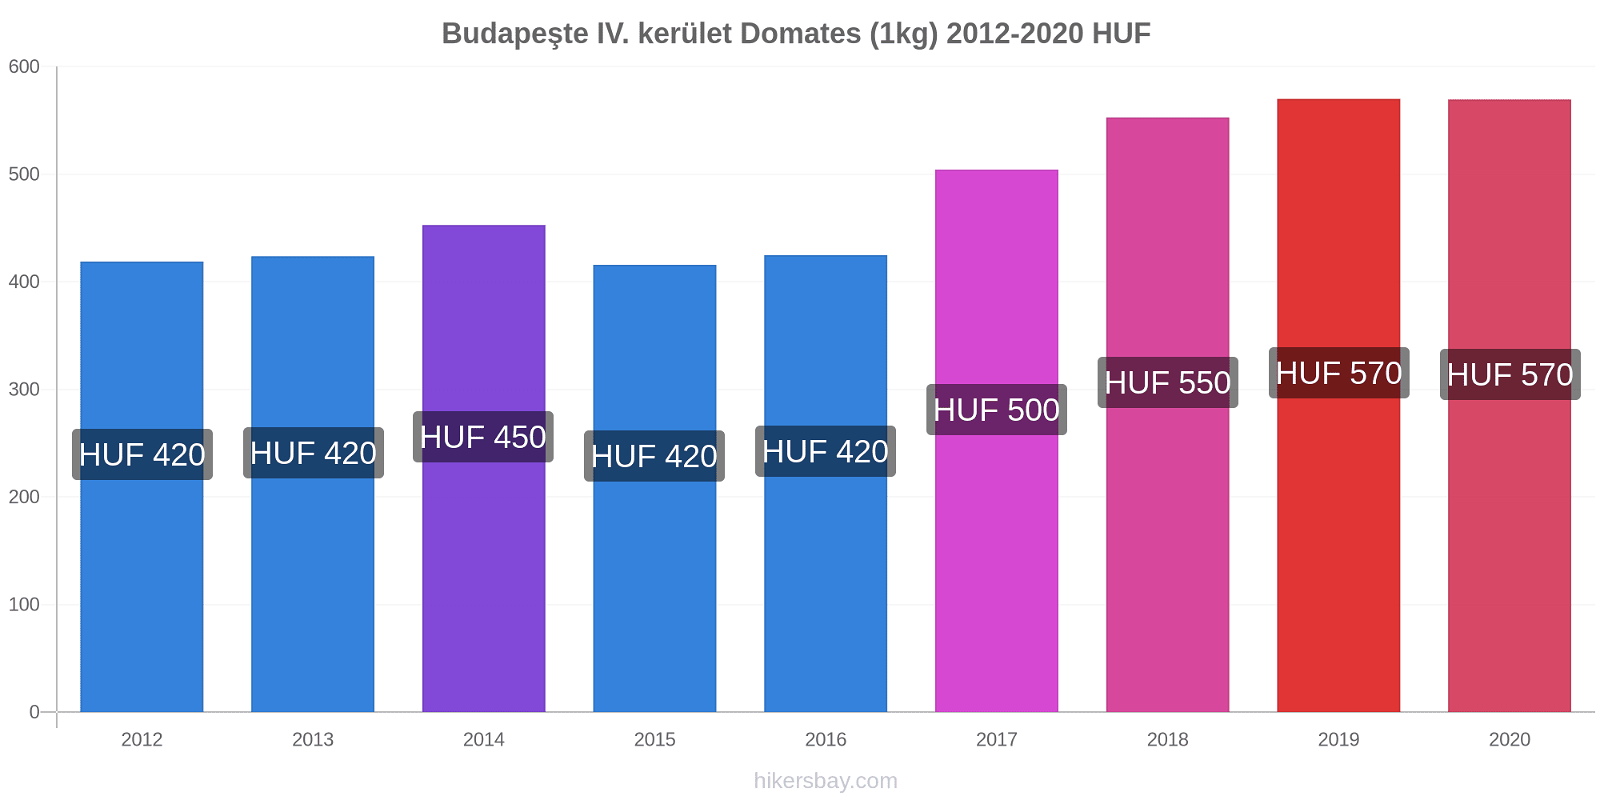 Budapeşte IV. kerület fiyat değişiklikleri Domates (1kg) hikersbay.com